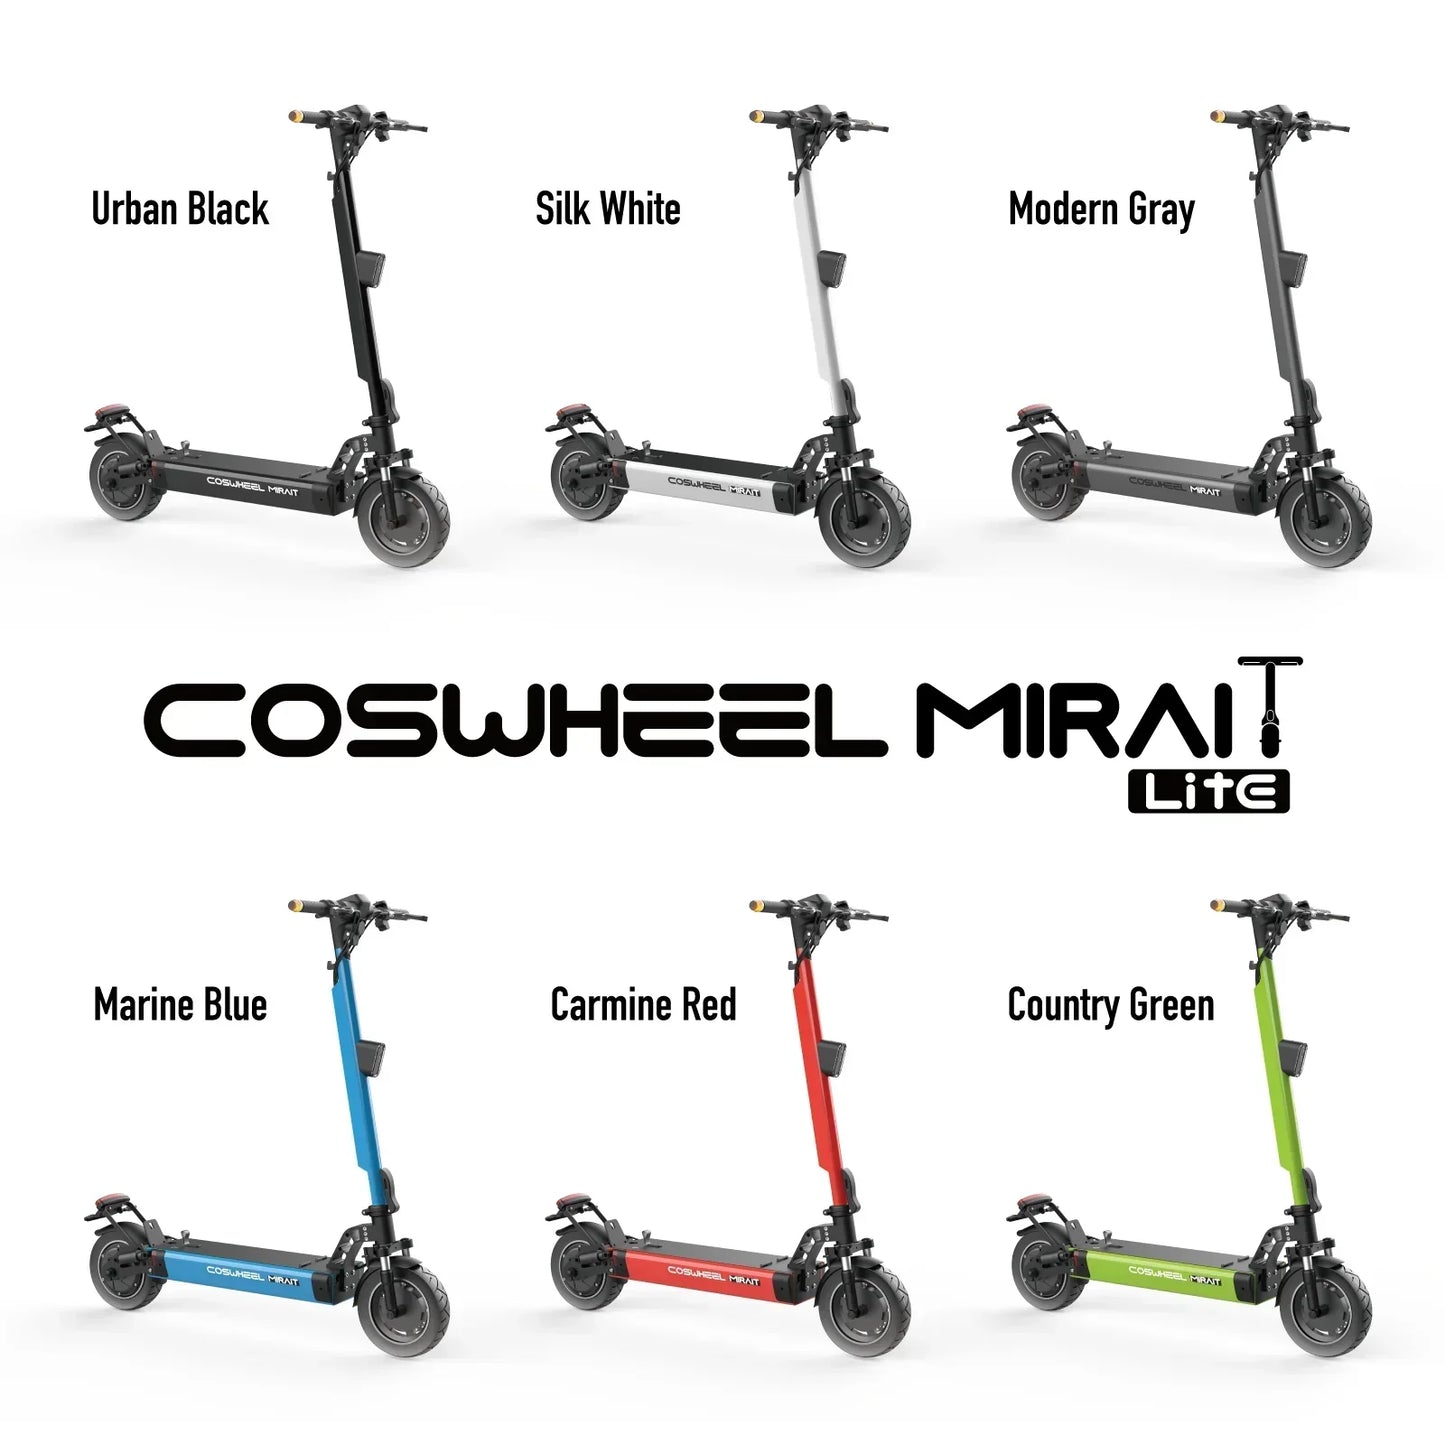 『特定小型原動機付自転車』COSWHEEL MIRAI T Lite [ホワイト：大容量バッテリー] 電動キックボード 公道/歩道走行可能 20km/h